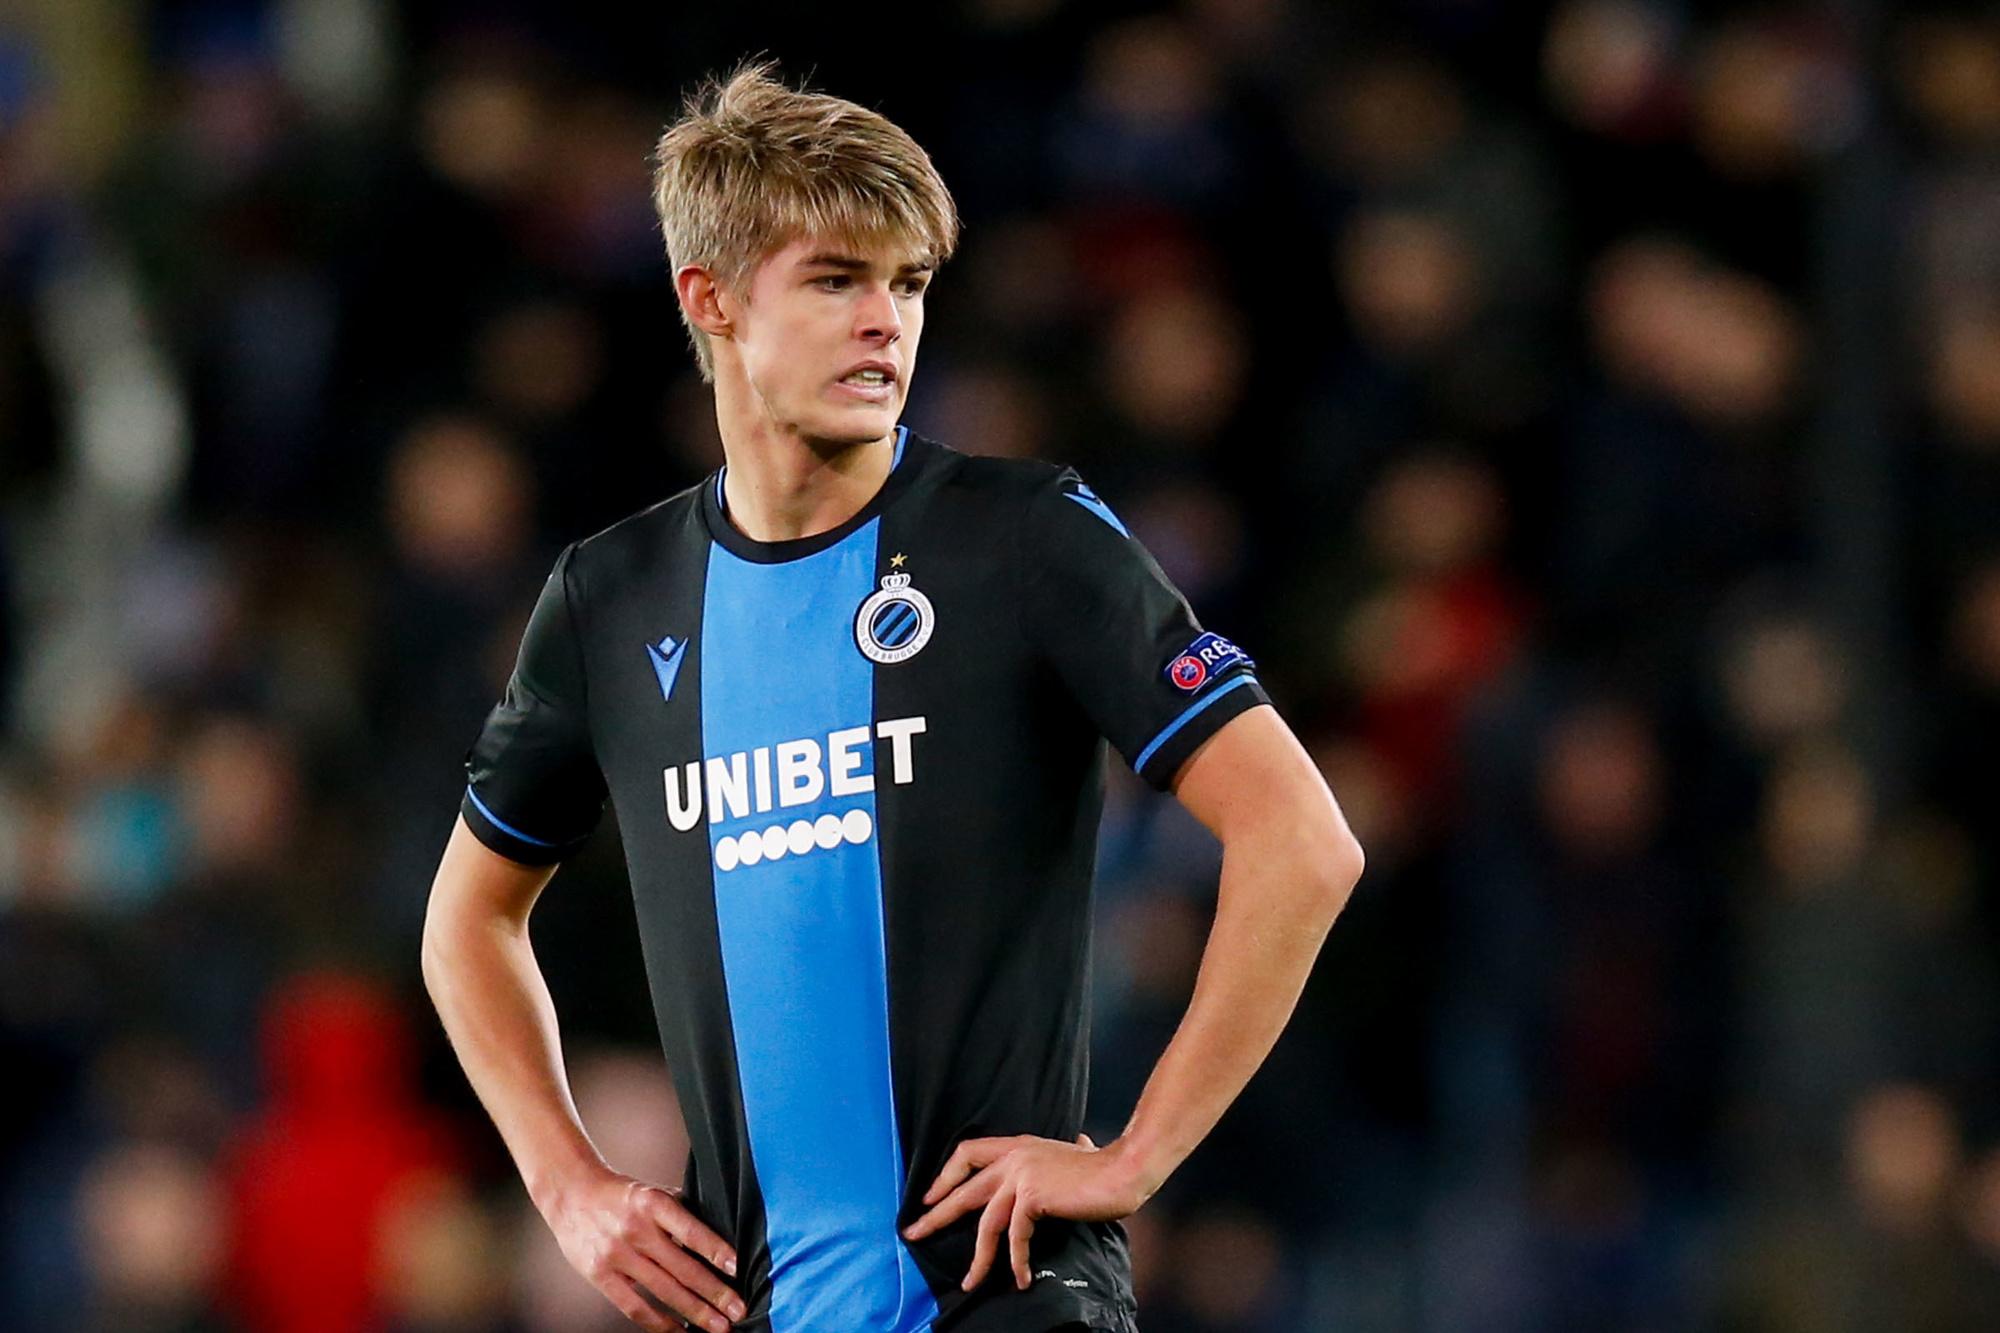 Breekt er eindelijk nog eens een jeugdspeler van Club Brugge internationaal door?